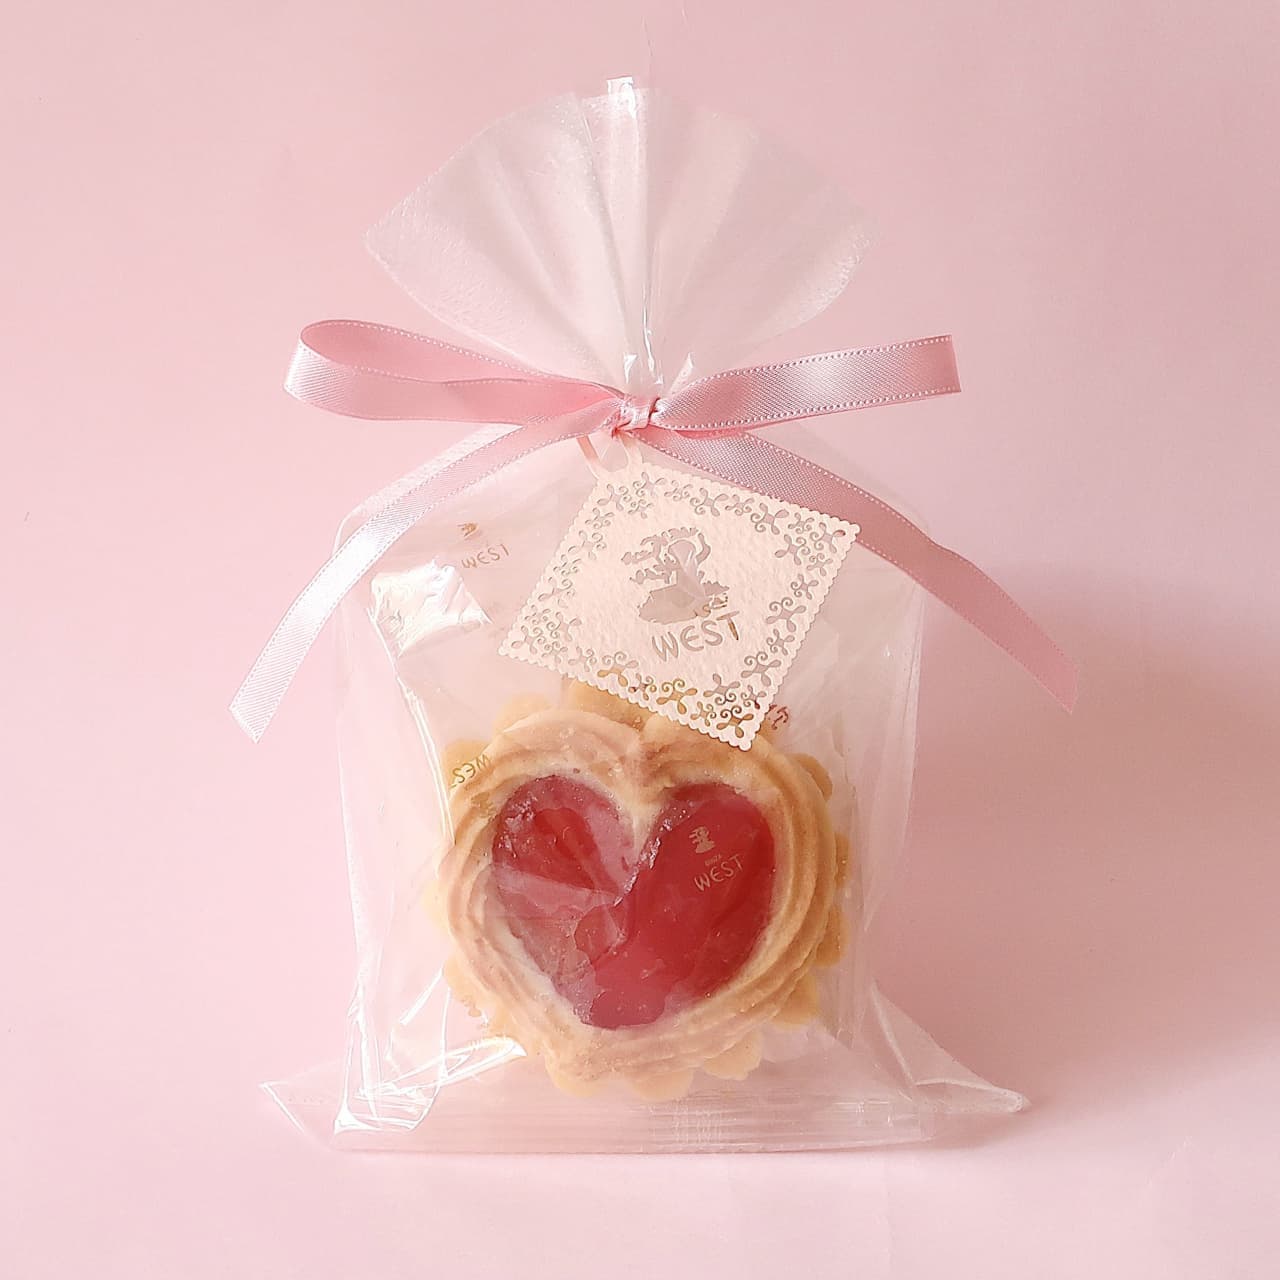 Ginza West “Valentine Gift”